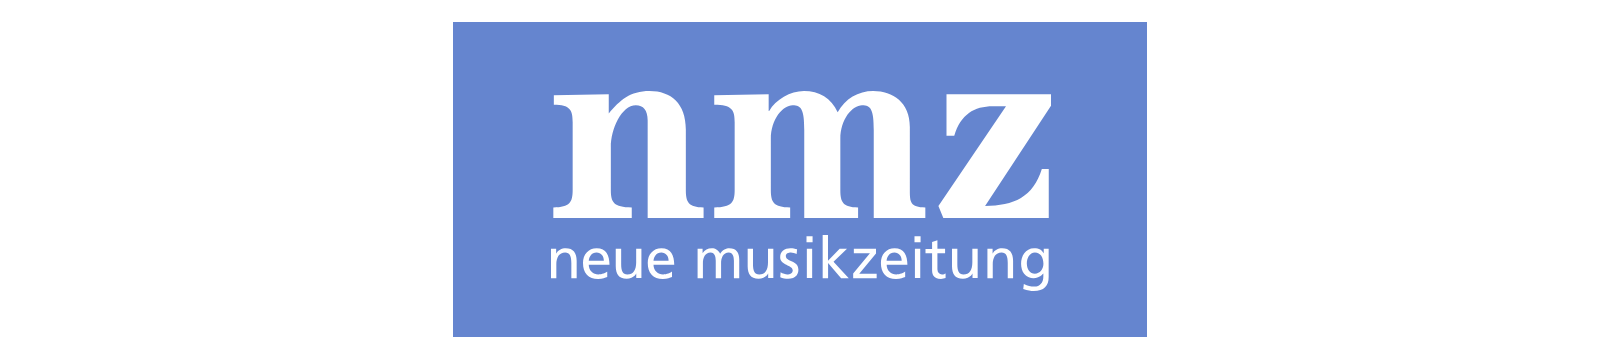 nmz logo head